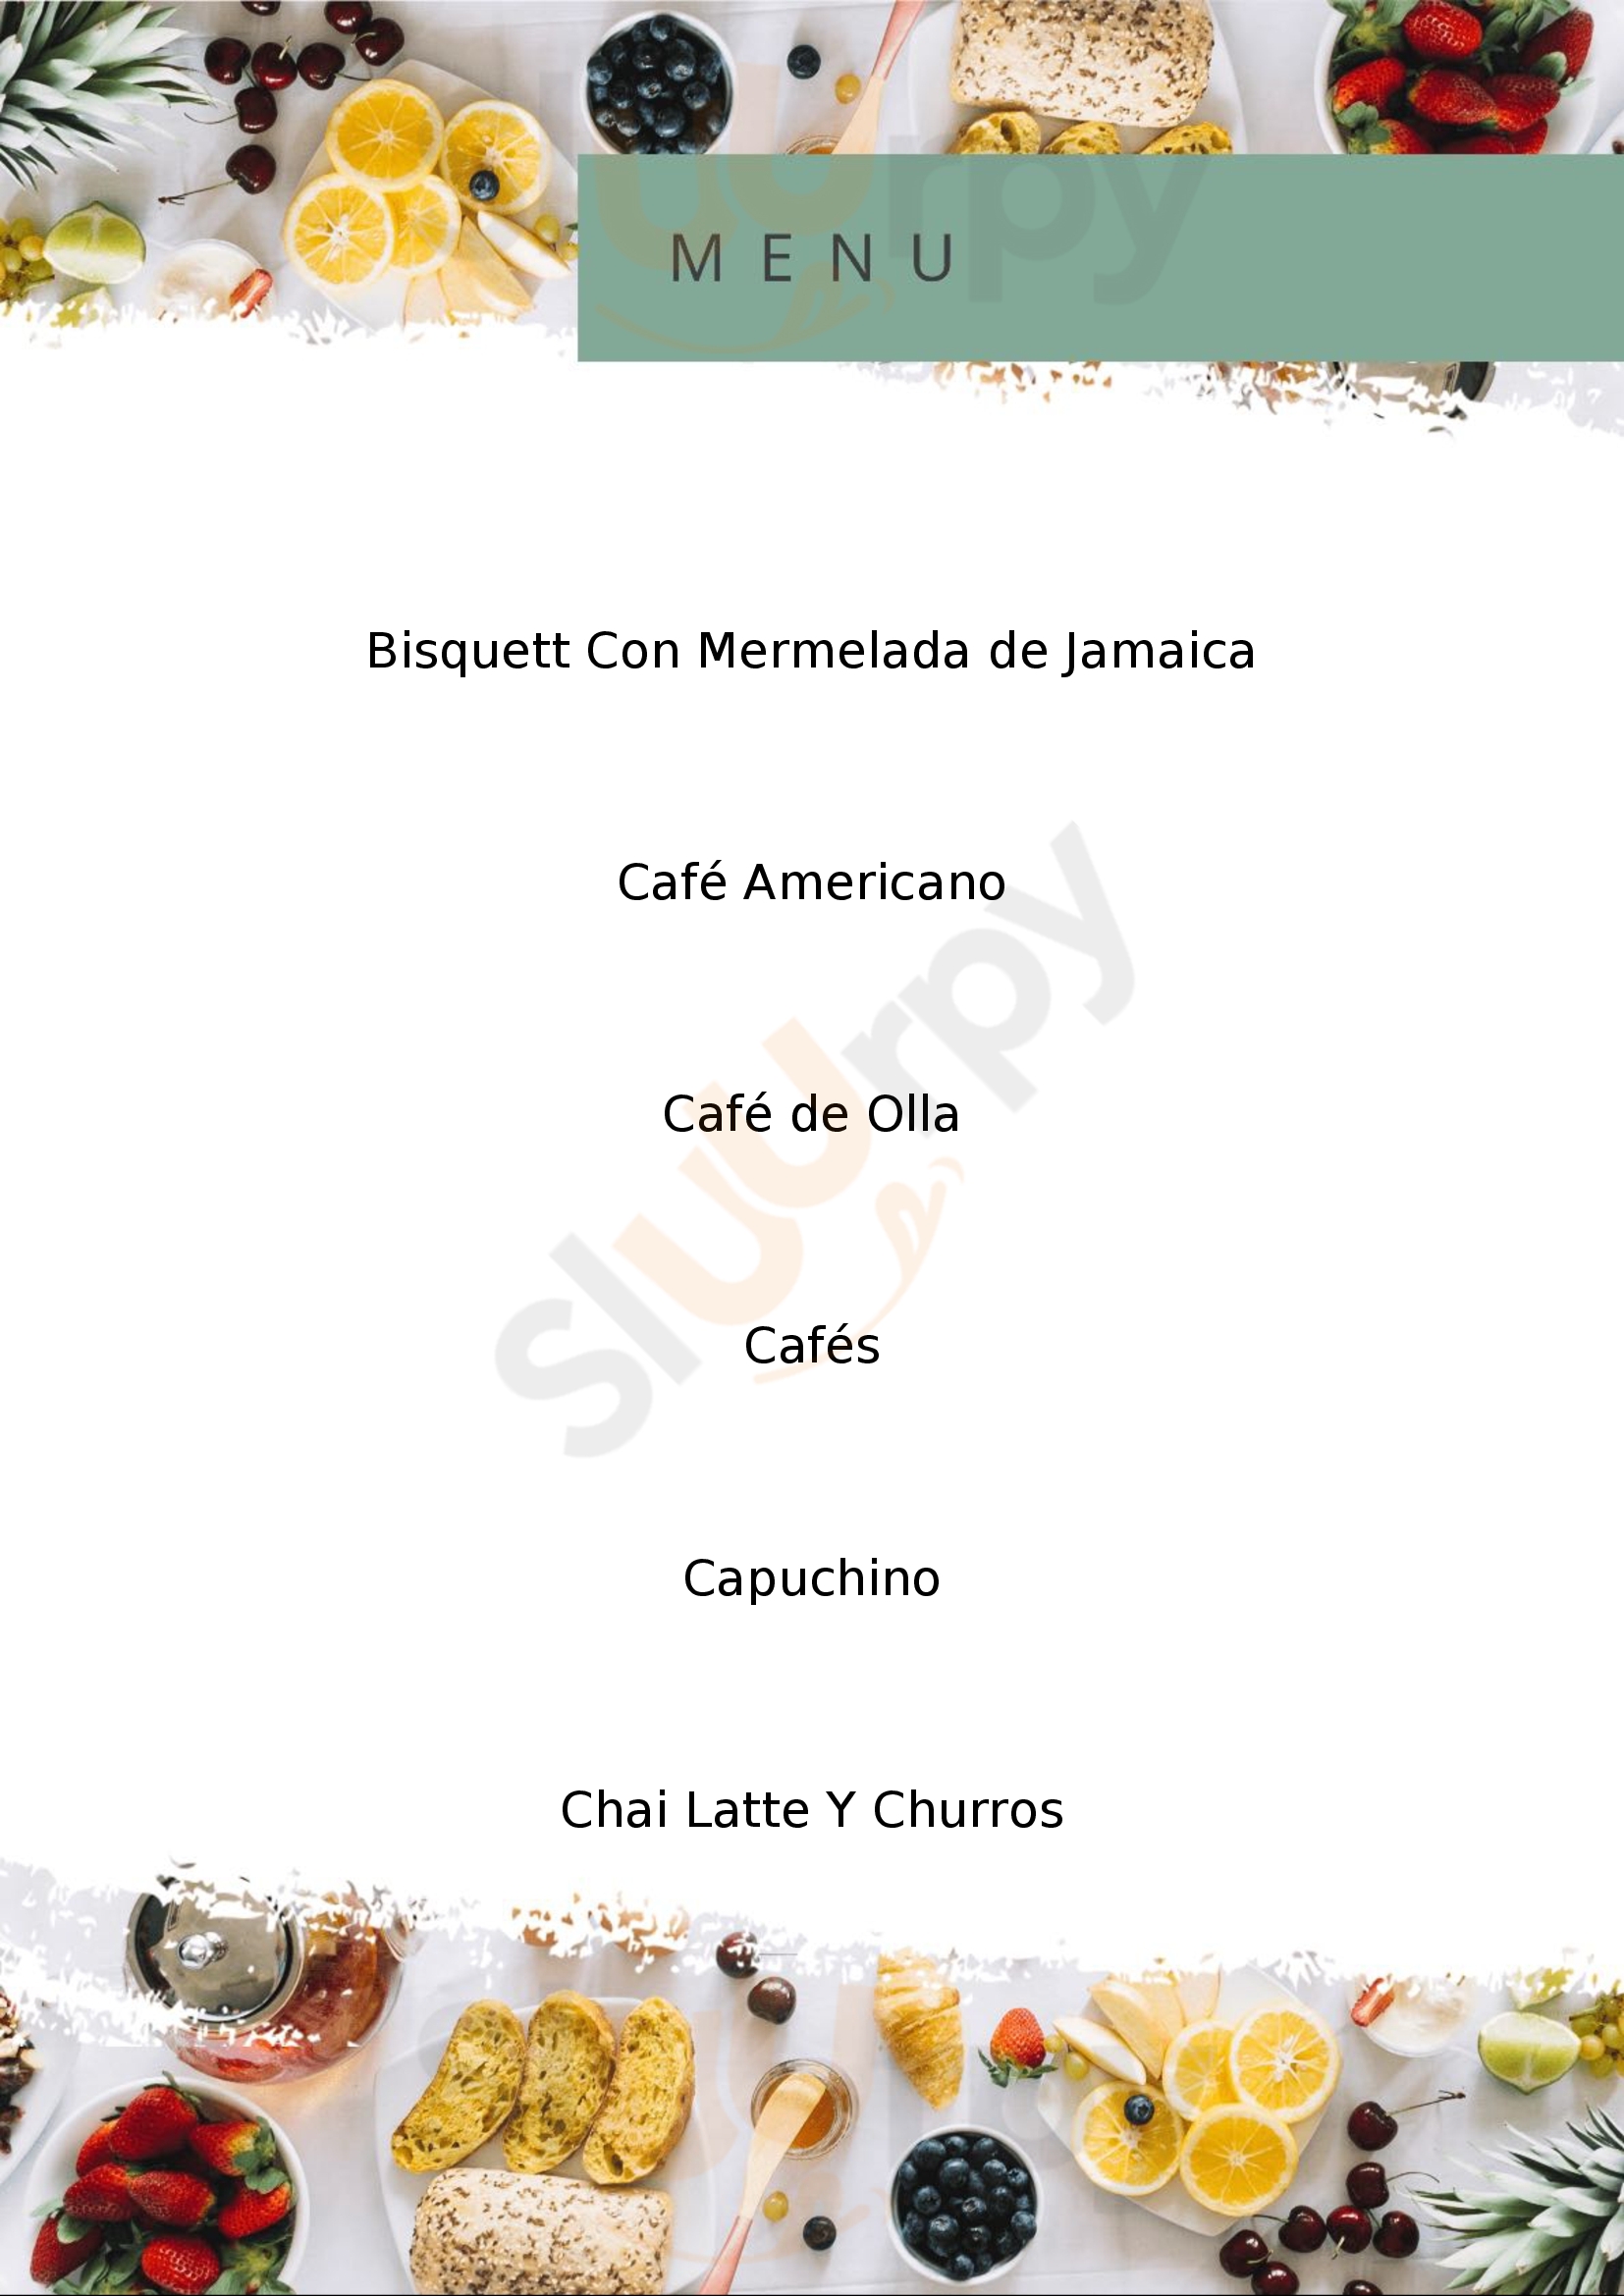 Suculenta Deli Cafe Mexicali Menu - 1